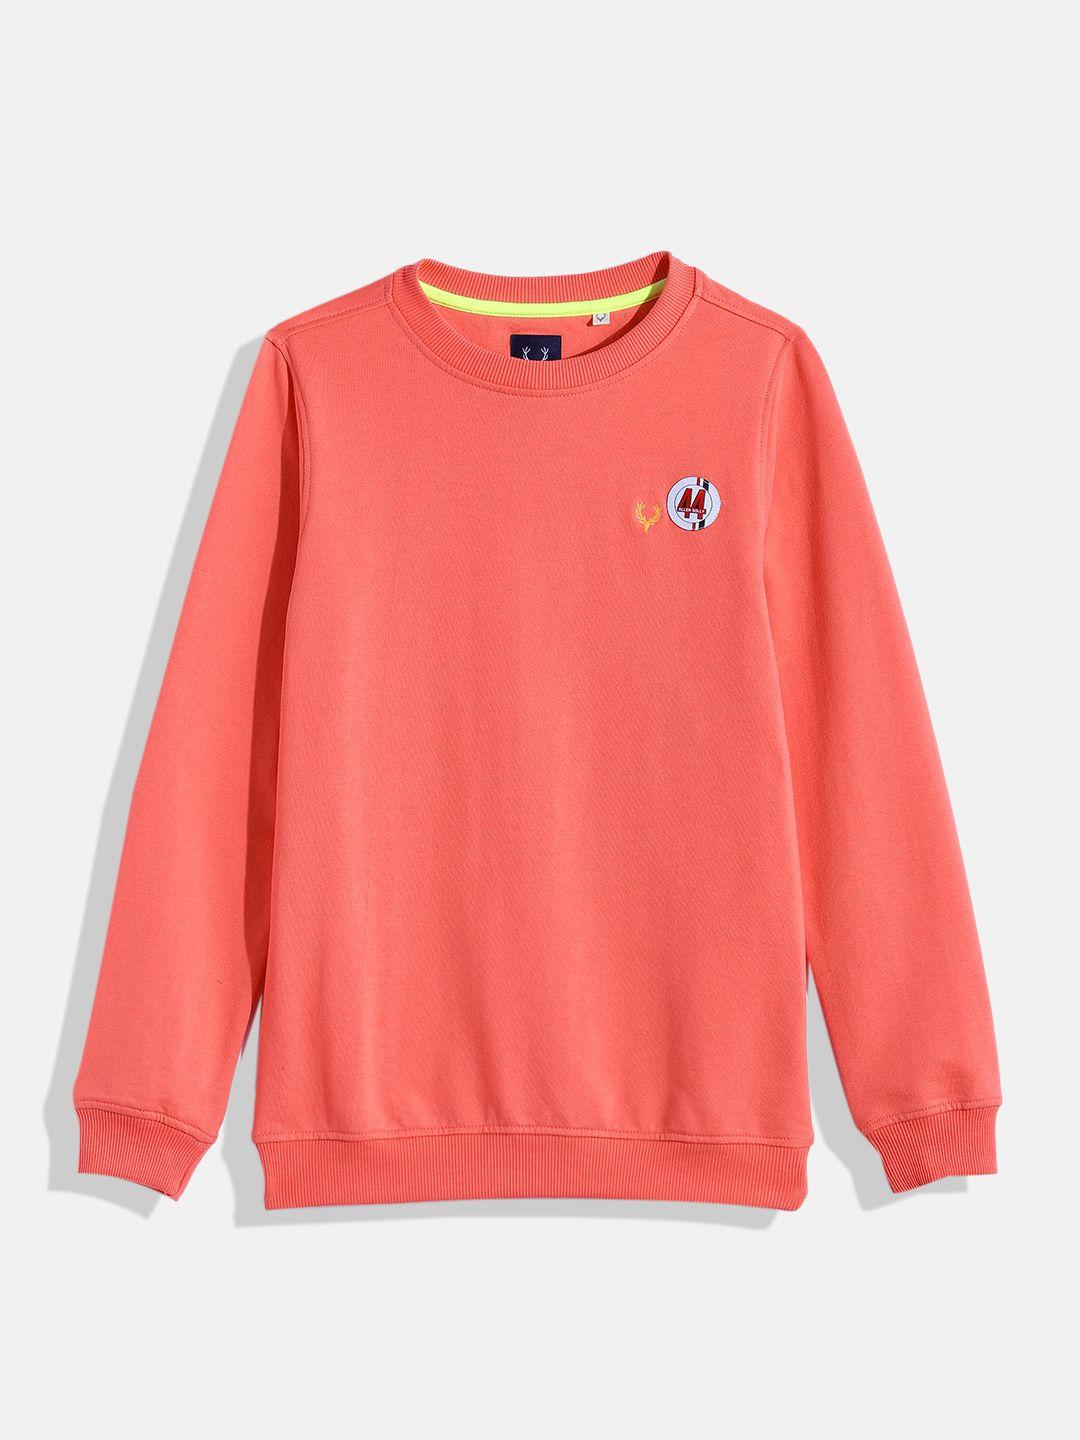 allen solly junior boys coral pink sweatshirt